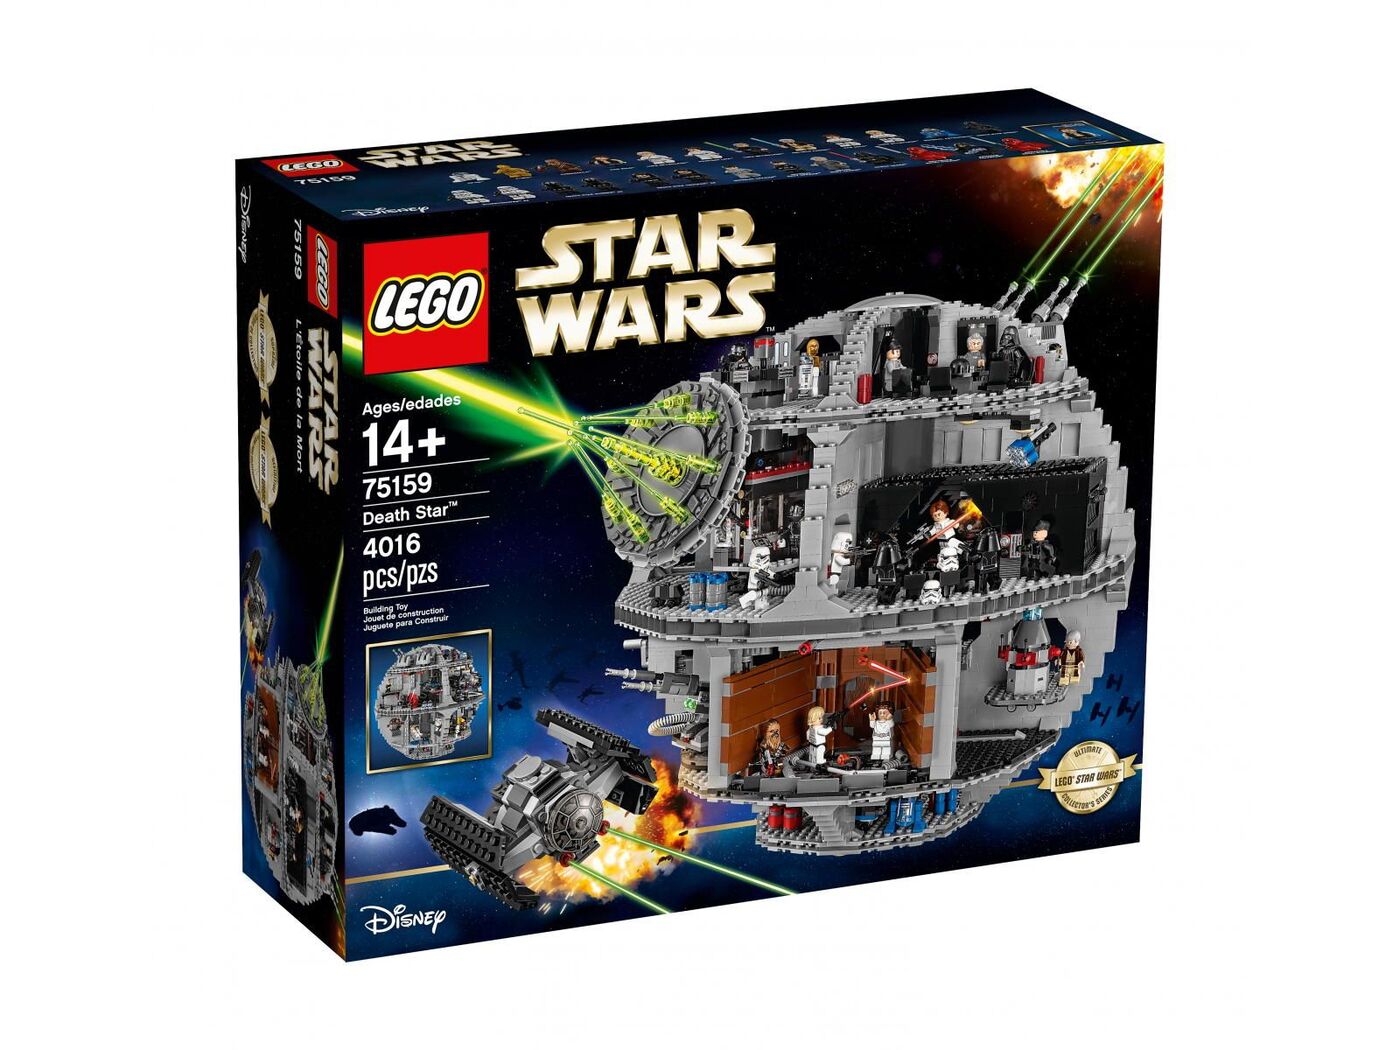 LEGO Star Wars Death Star